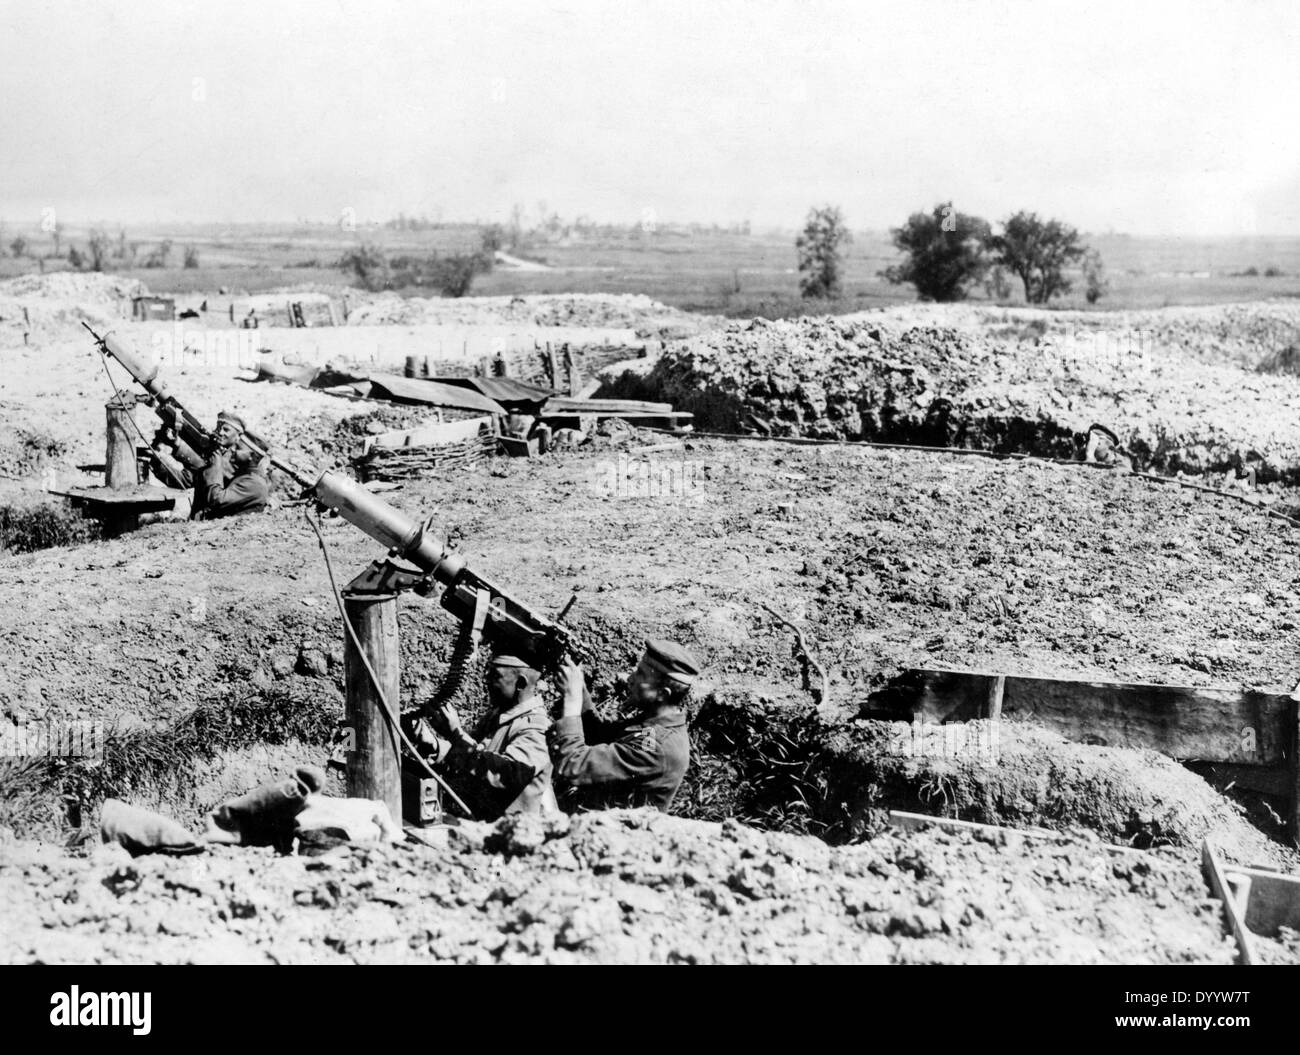 La guerre anti-aérienne allemande sur le front de l'ouest, 1917 Banque D'Images